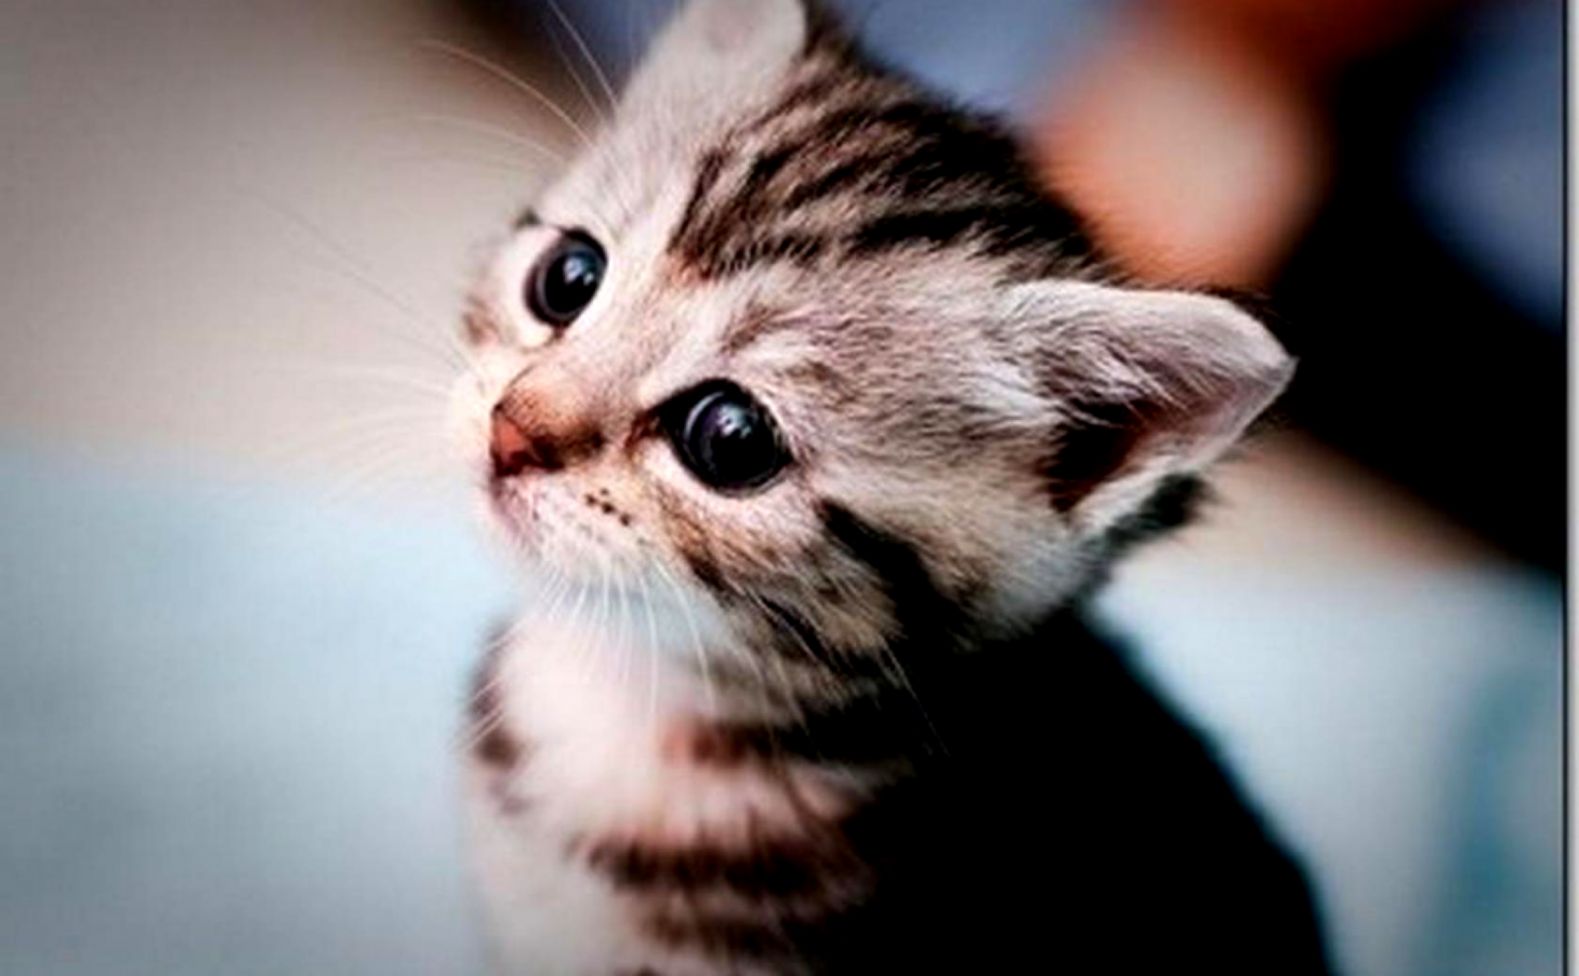 Cute Kitten Wallpaper Photos